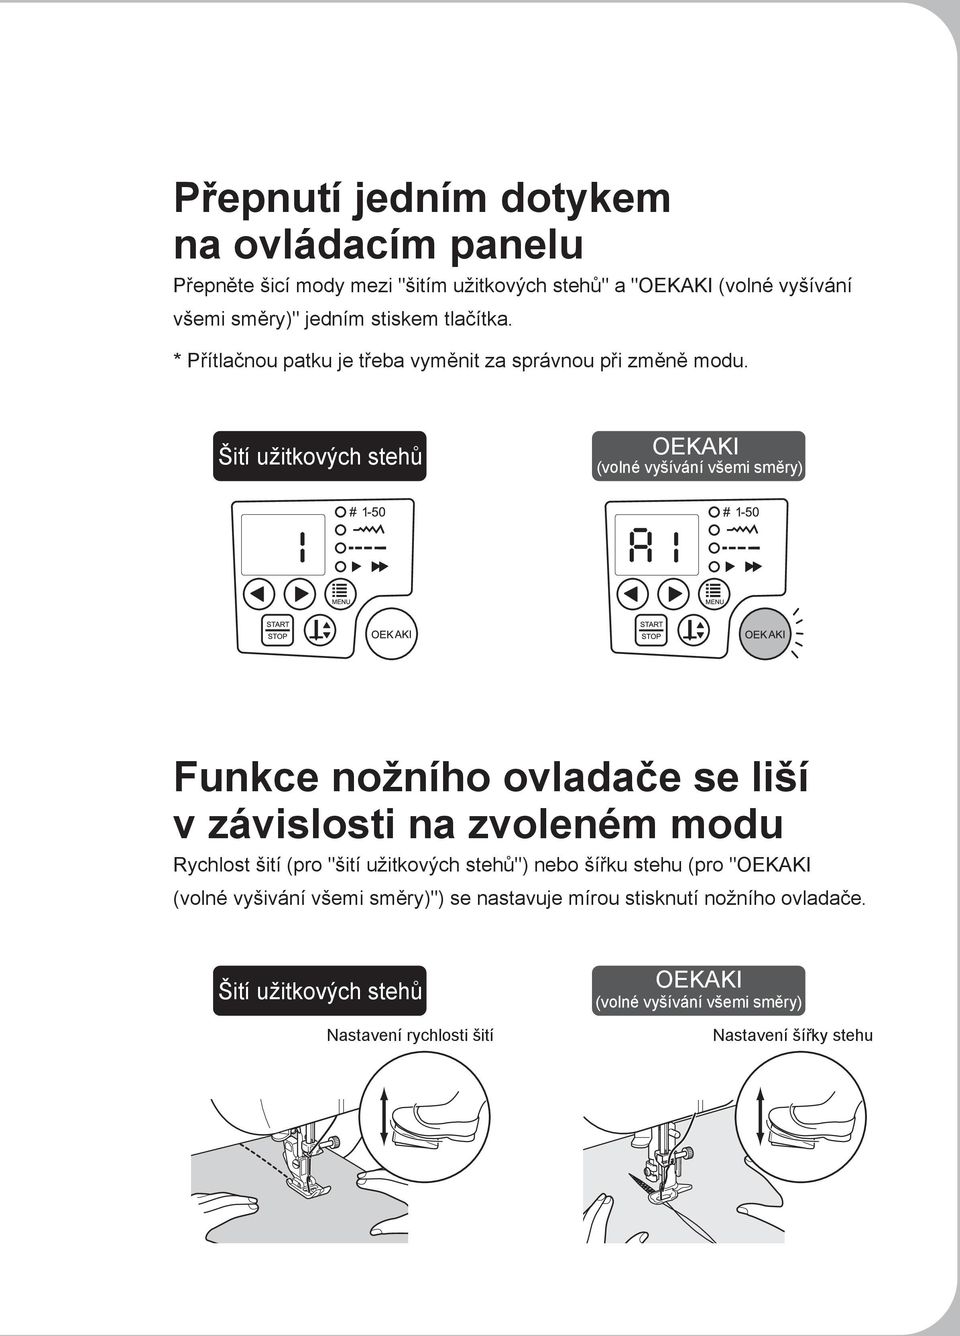 Šití užitkových stehů OEKAKI (volné vyšívání všemi směry) Funkce nožního ovladače se liší v závislosti na zvoleném modu Rychlost šití (pro "šití